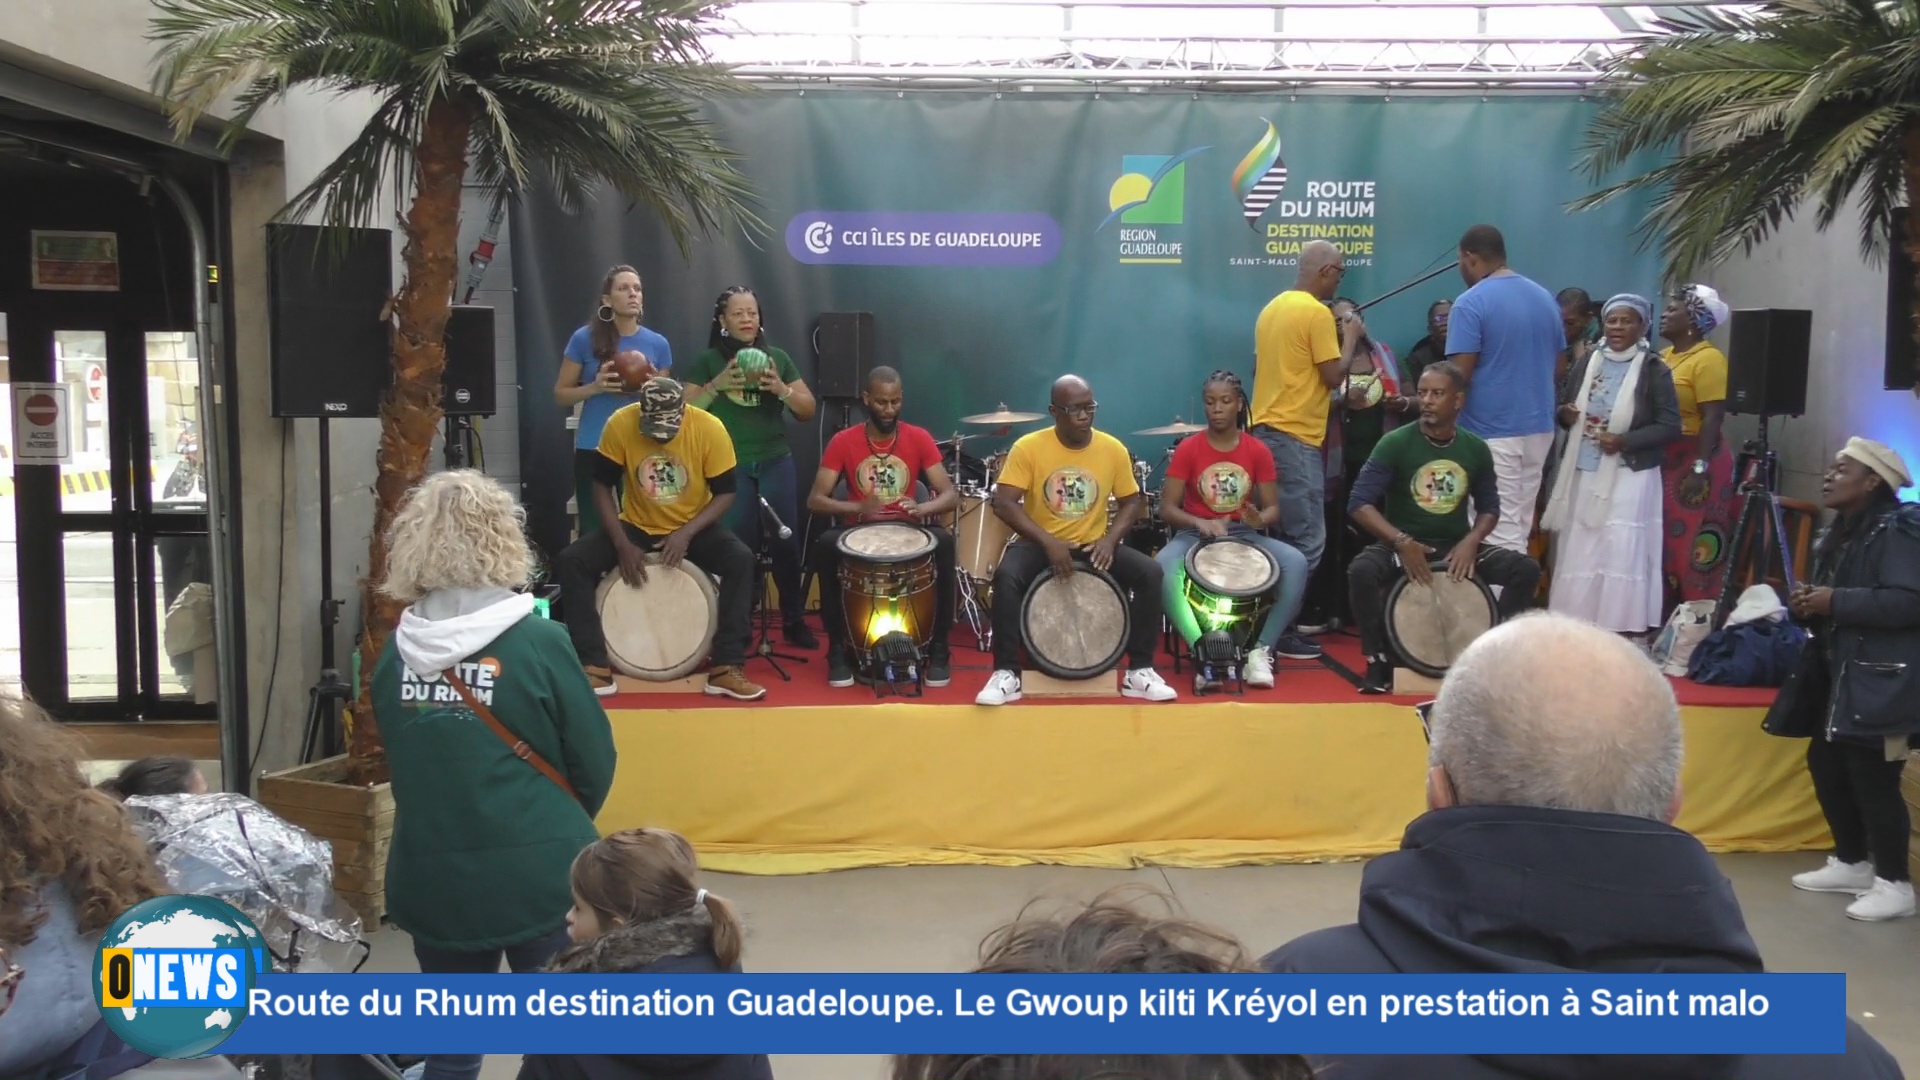 [Vidéo] Route du Rhum destination Guadeloupe. Le Gwoup kilti Kréyol en prestation à Saint Malo